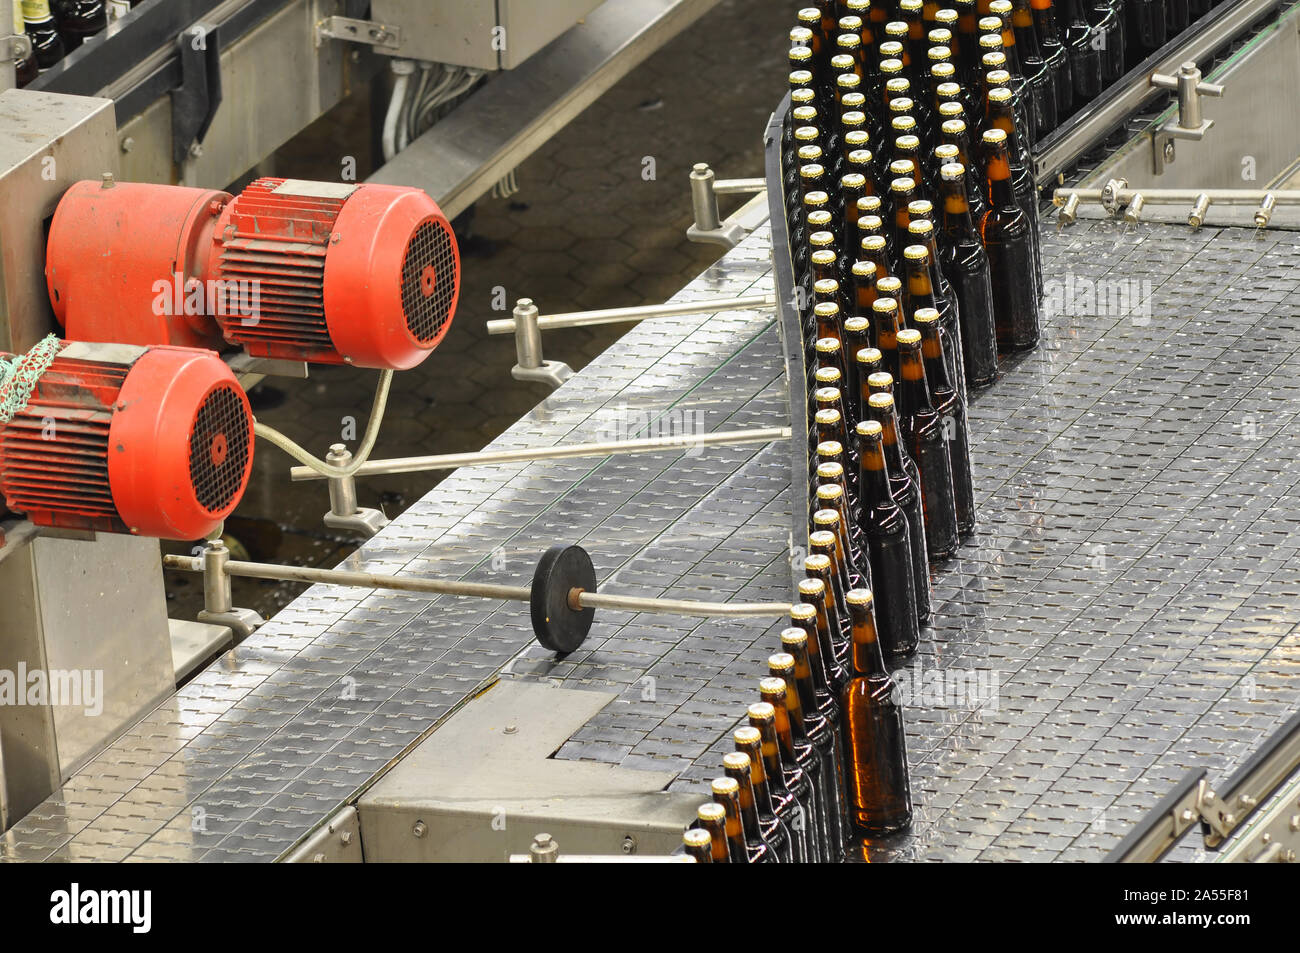 Bottiglie di birra sulla linea di montaggio in una birreria moderna - impianto industriale nell'industria alimentare Foto Stock